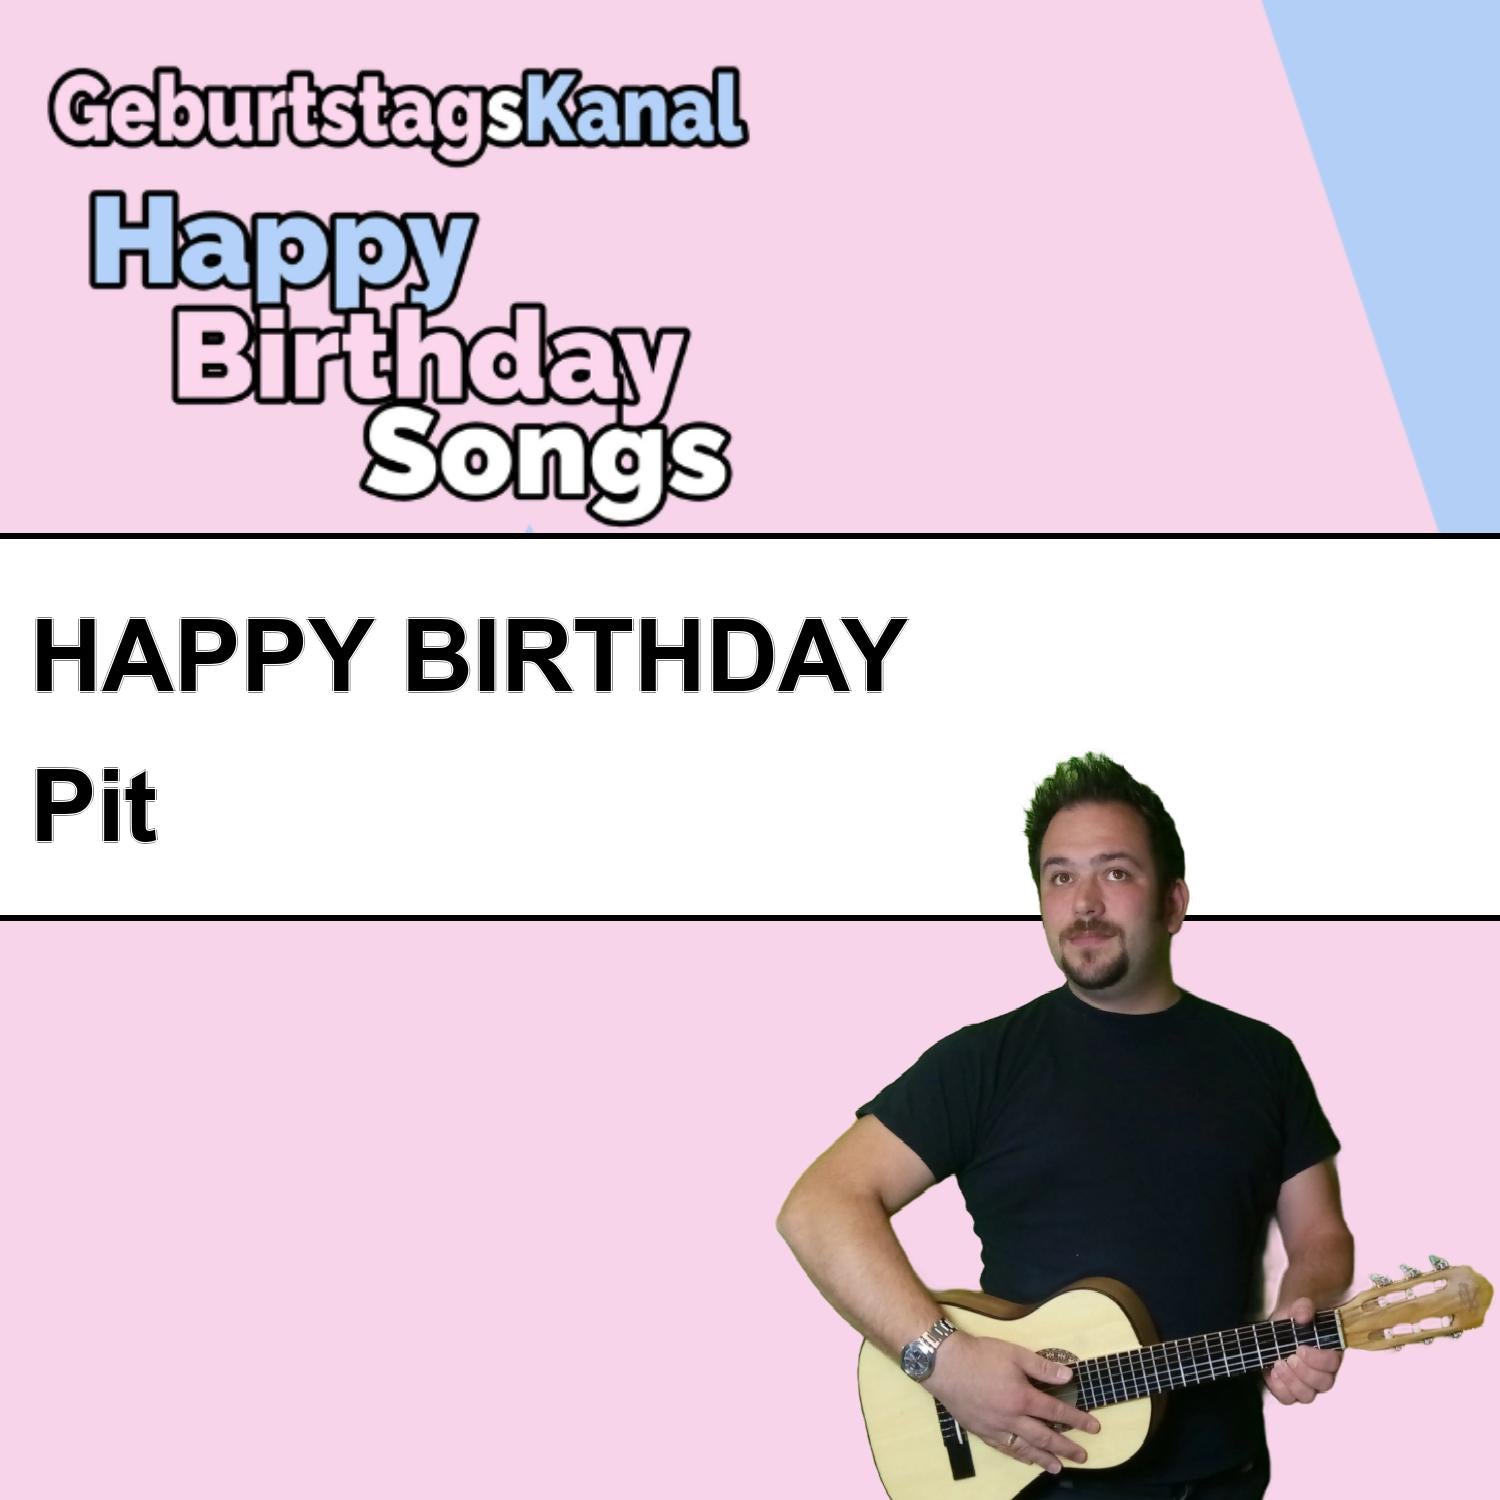 Produktbild Happy Birthday to you Pit mit Wunschgrußbotschaft